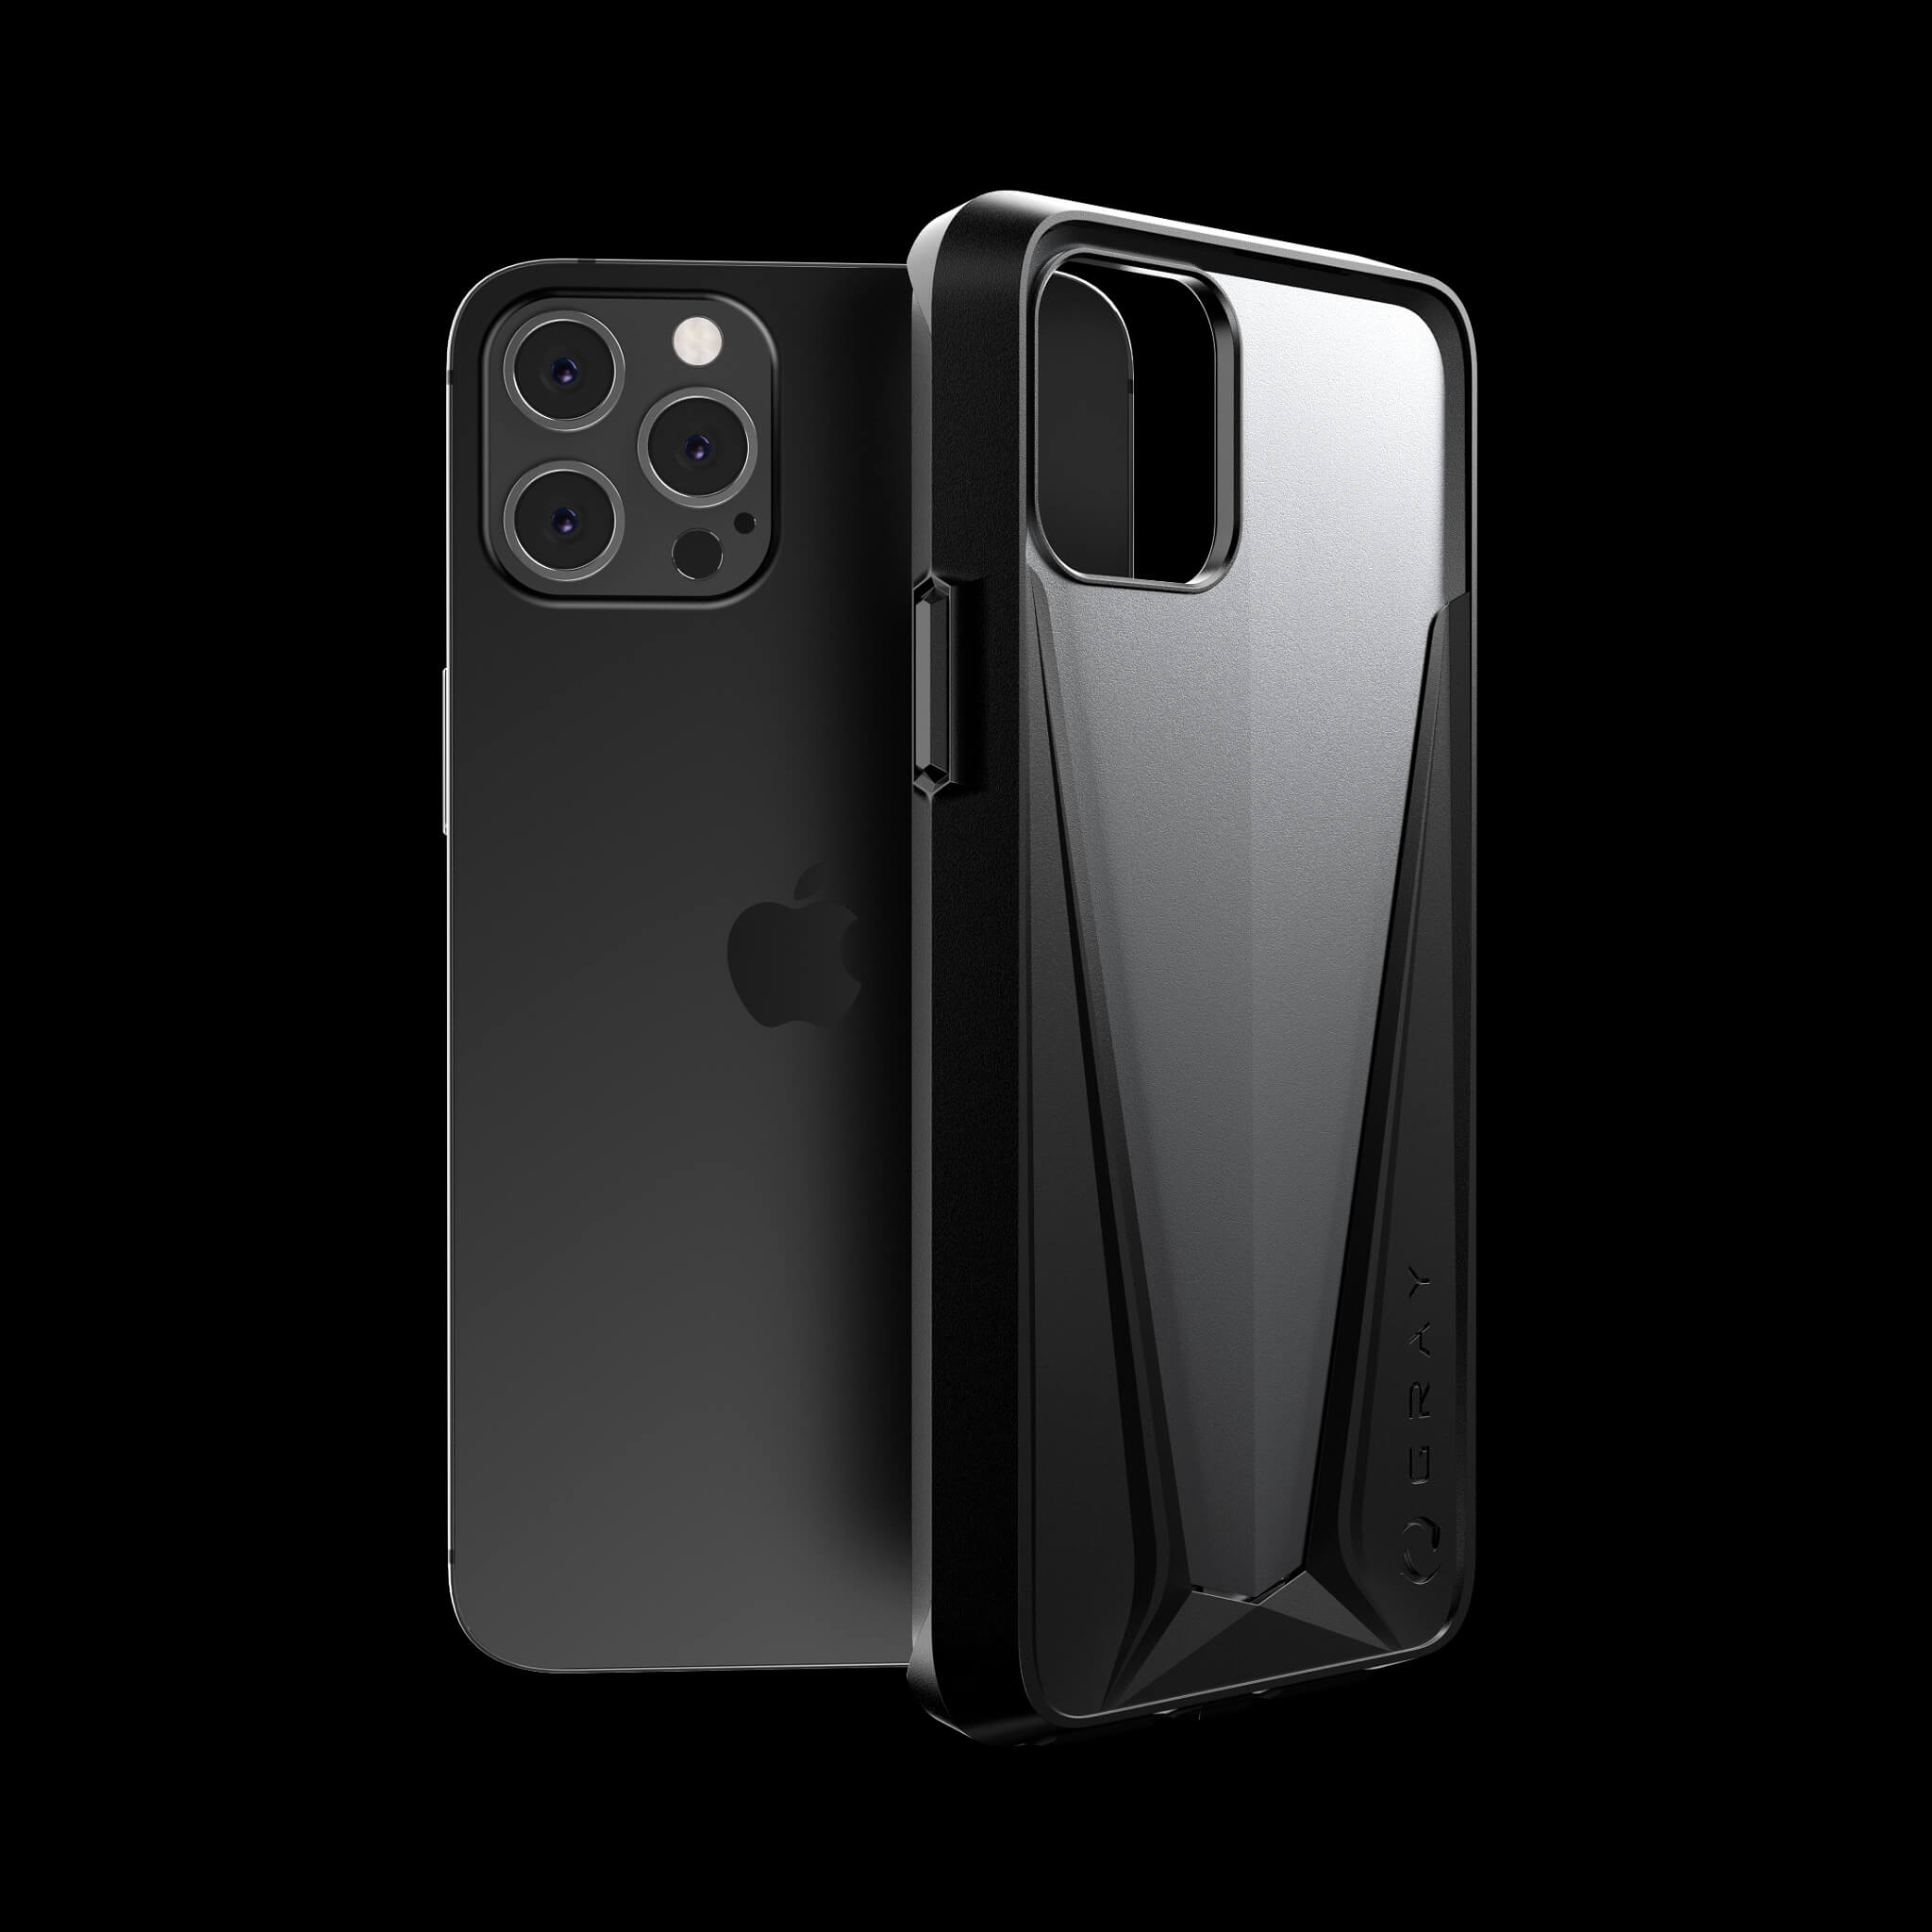 morpheus gray aluminium luxury iPhone 12 pro case